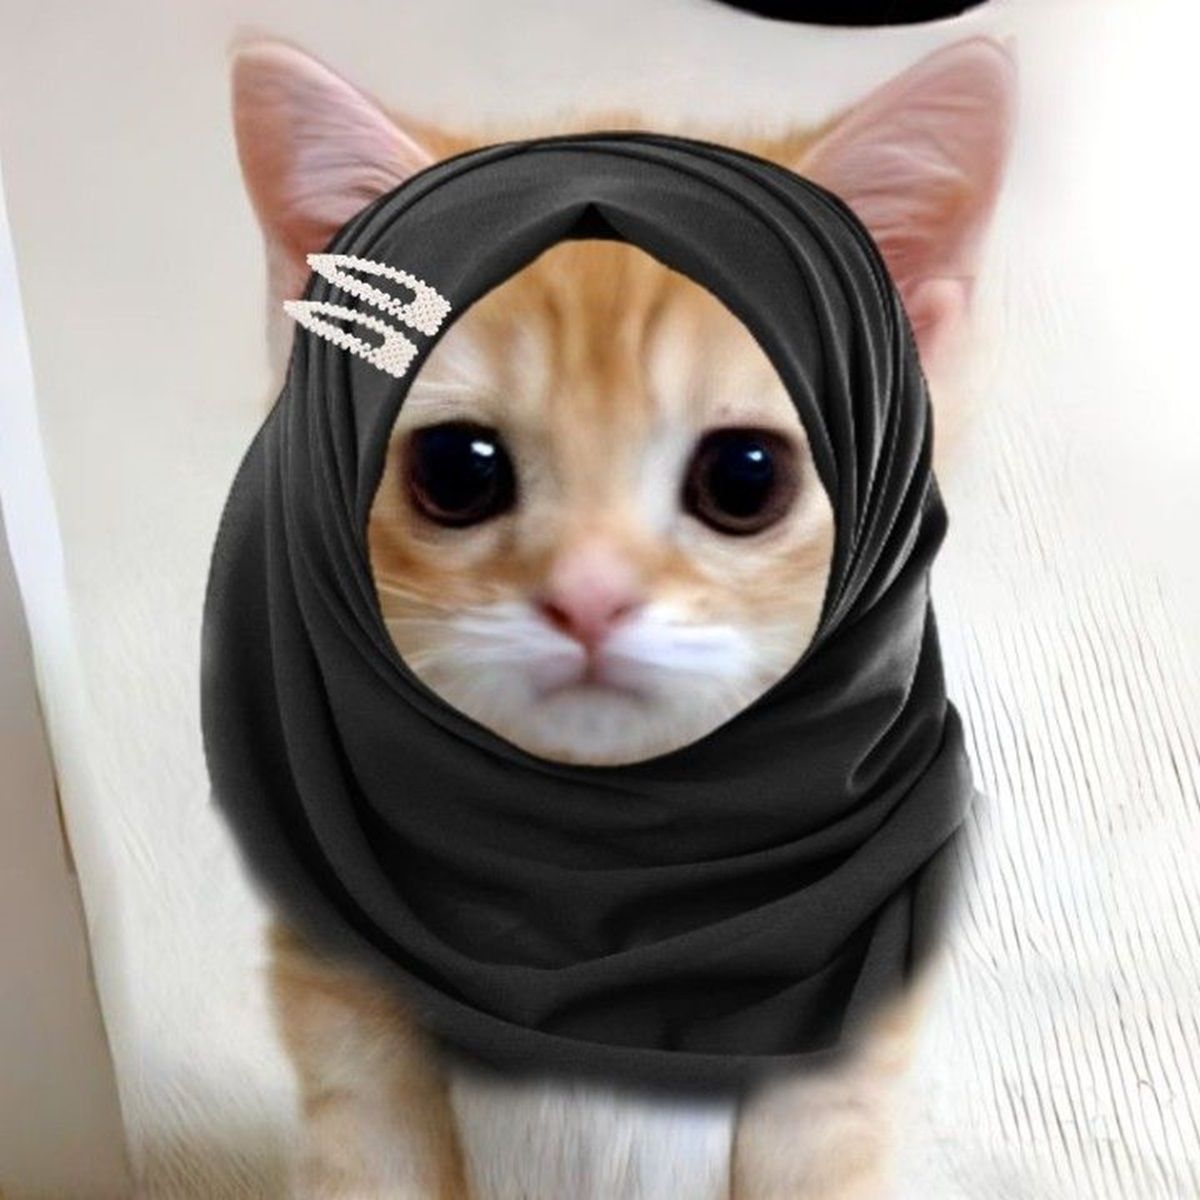 PP Kucing Ramadhan